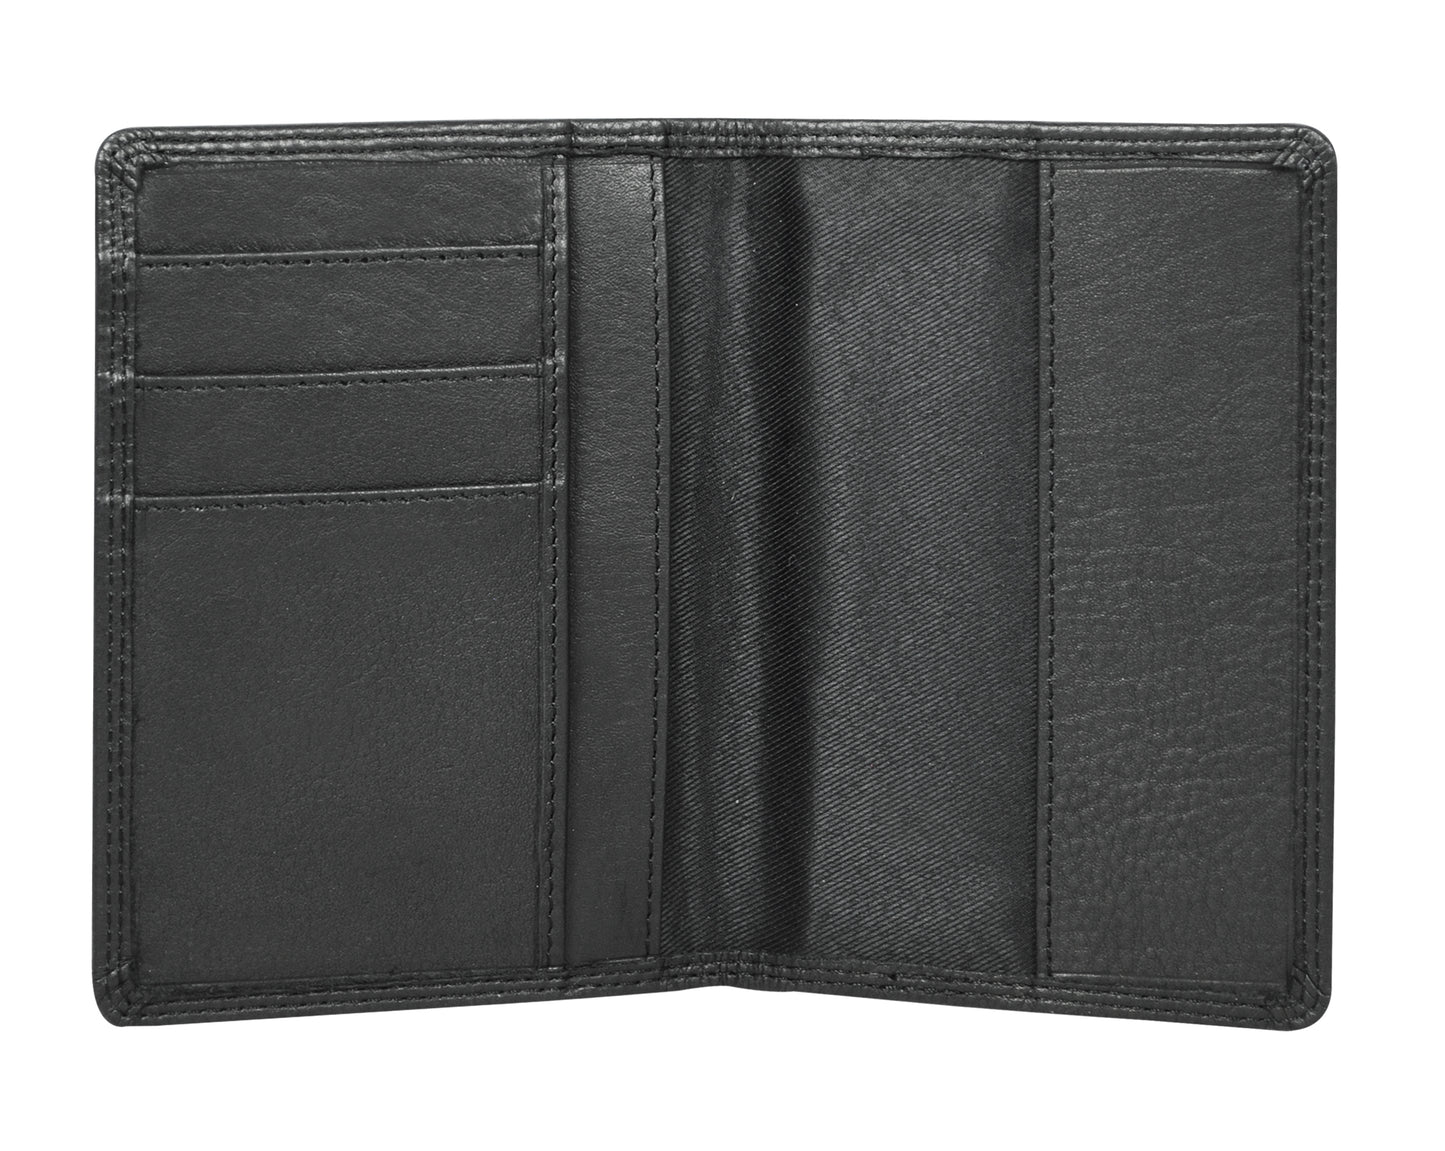 Calfnero Genuine Leather Passport Wallet-Passport Holder (5232-Black)